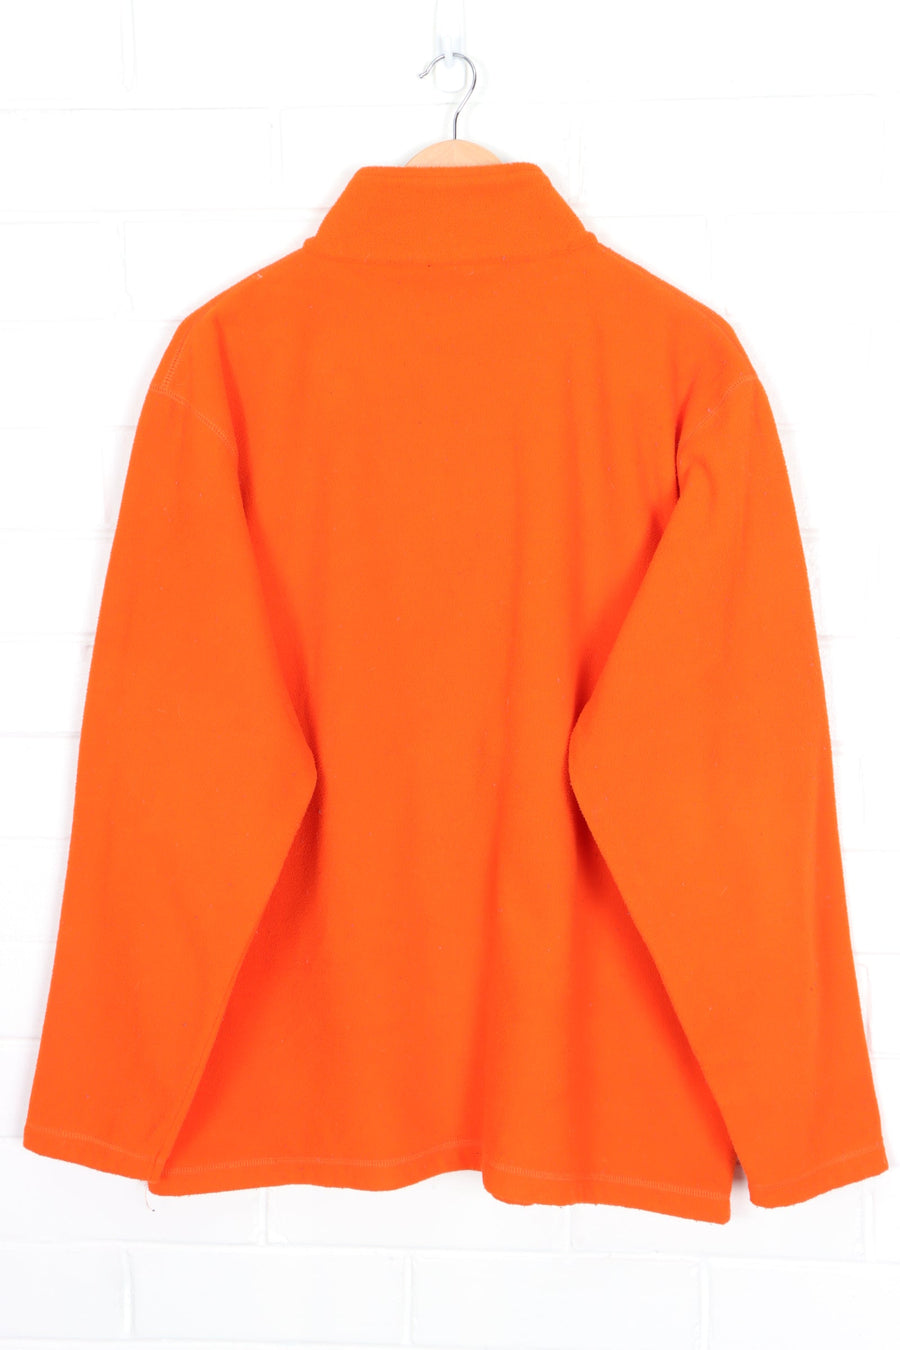 RALPH LAUREN POLO JEANS Orange 1/4 Zip Fleece Sweatshirt (XL)